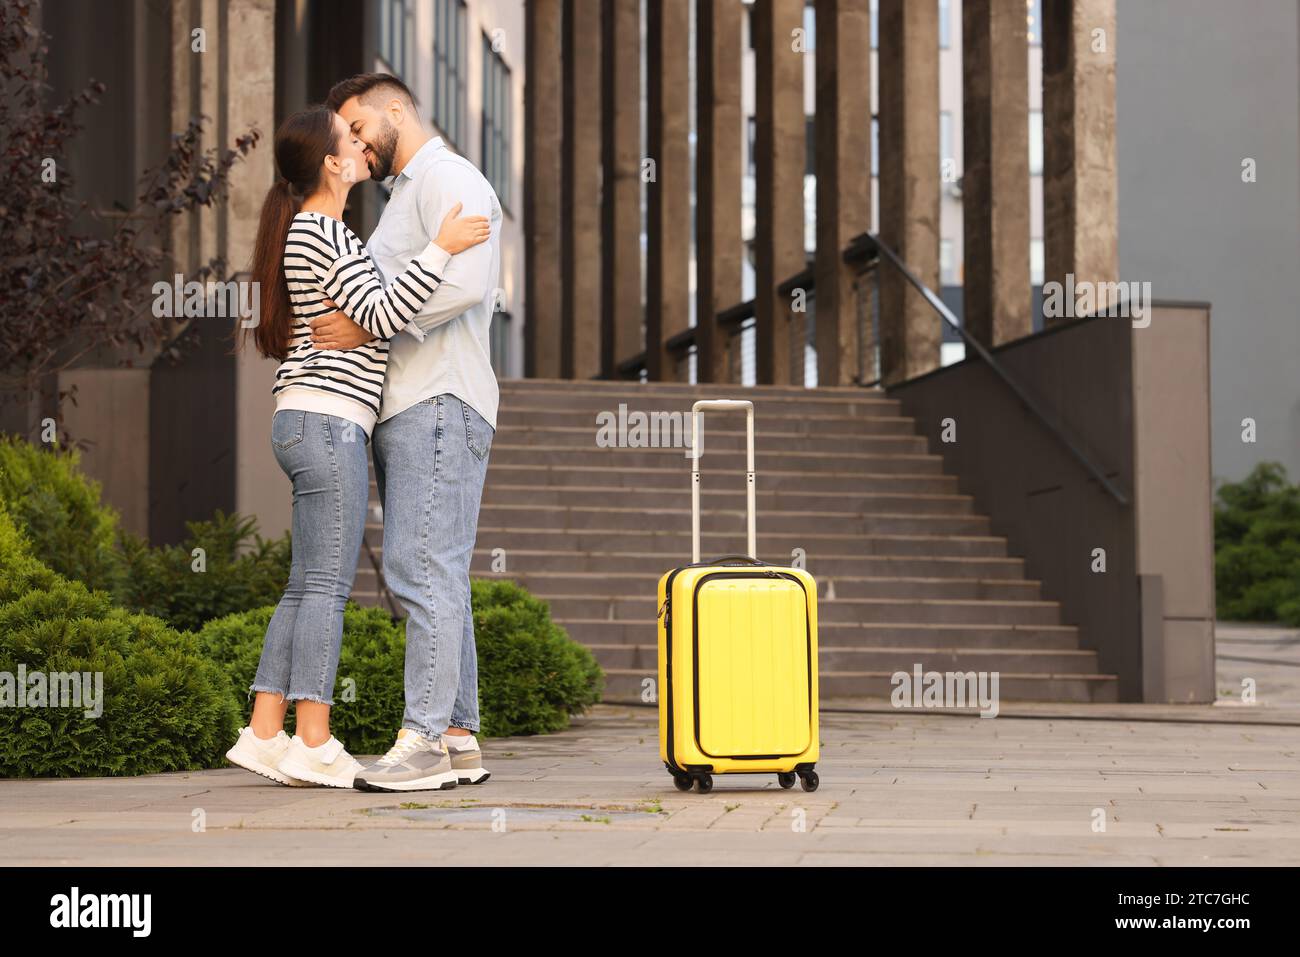 Relazione a distanza. Bellissime coppie giovani che si baciano e le valigie vicino a un edificio all'aperto Foto Stock